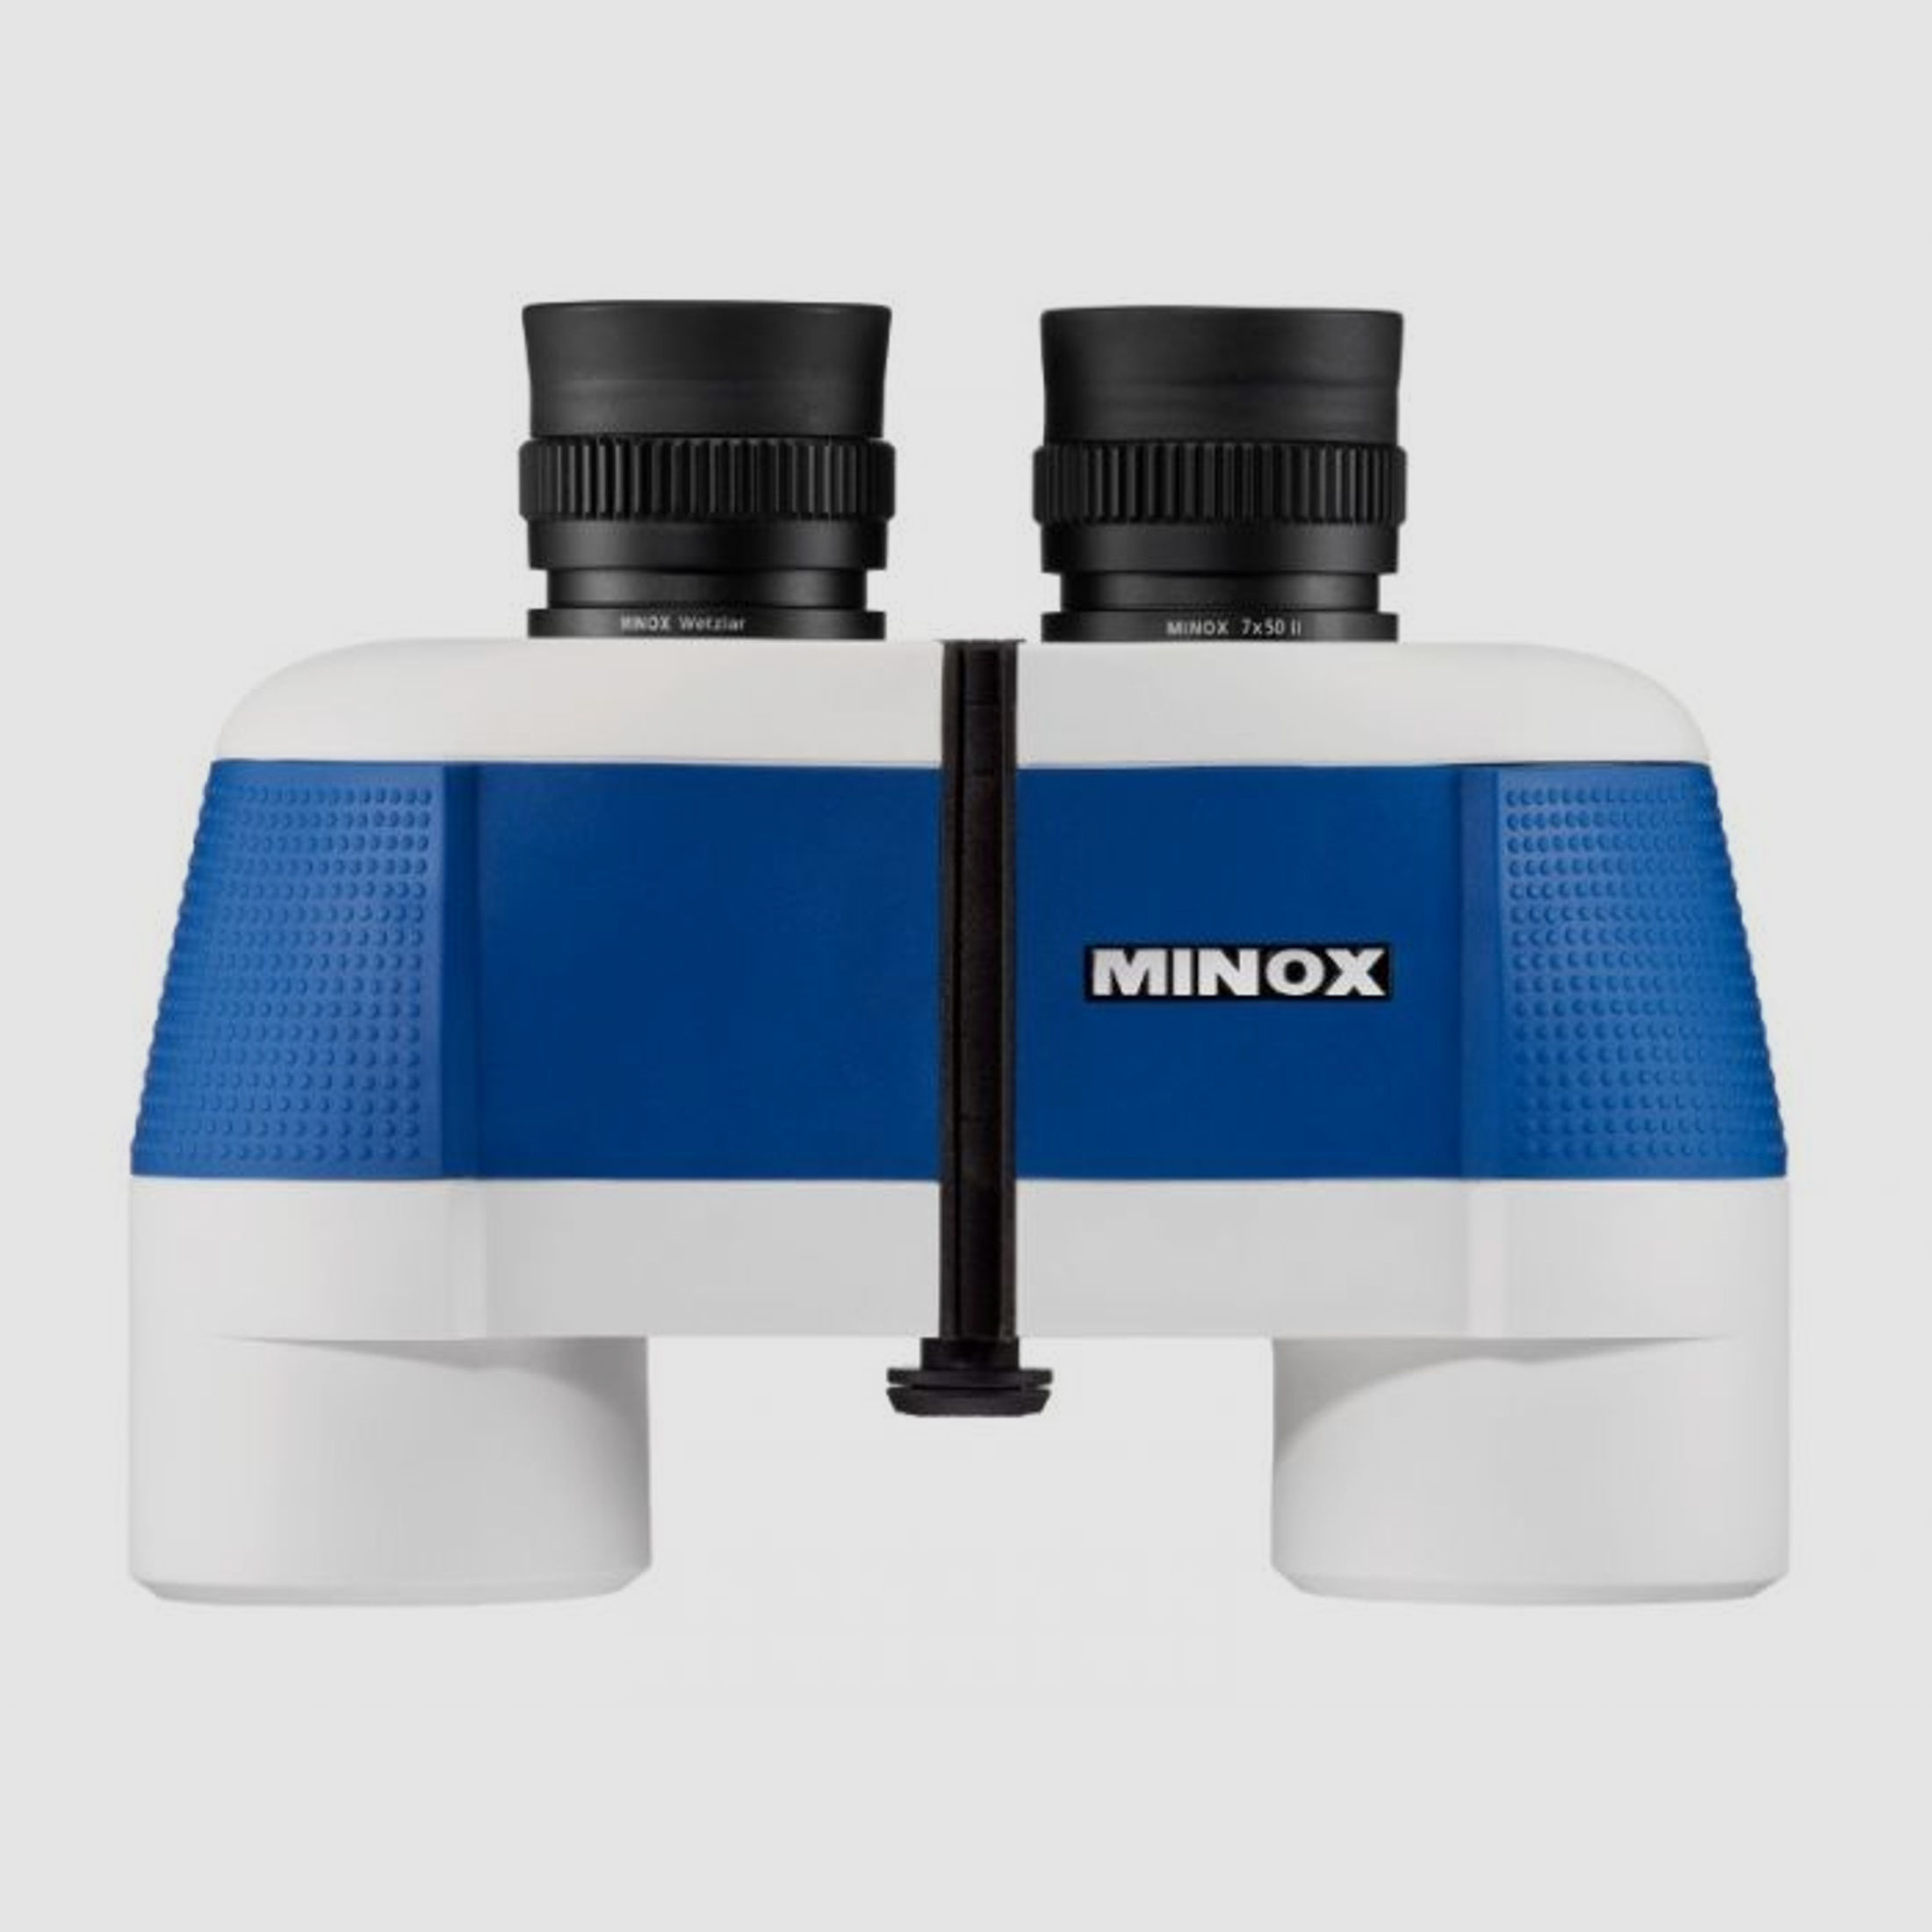 Minox Minox BN 7x50 II